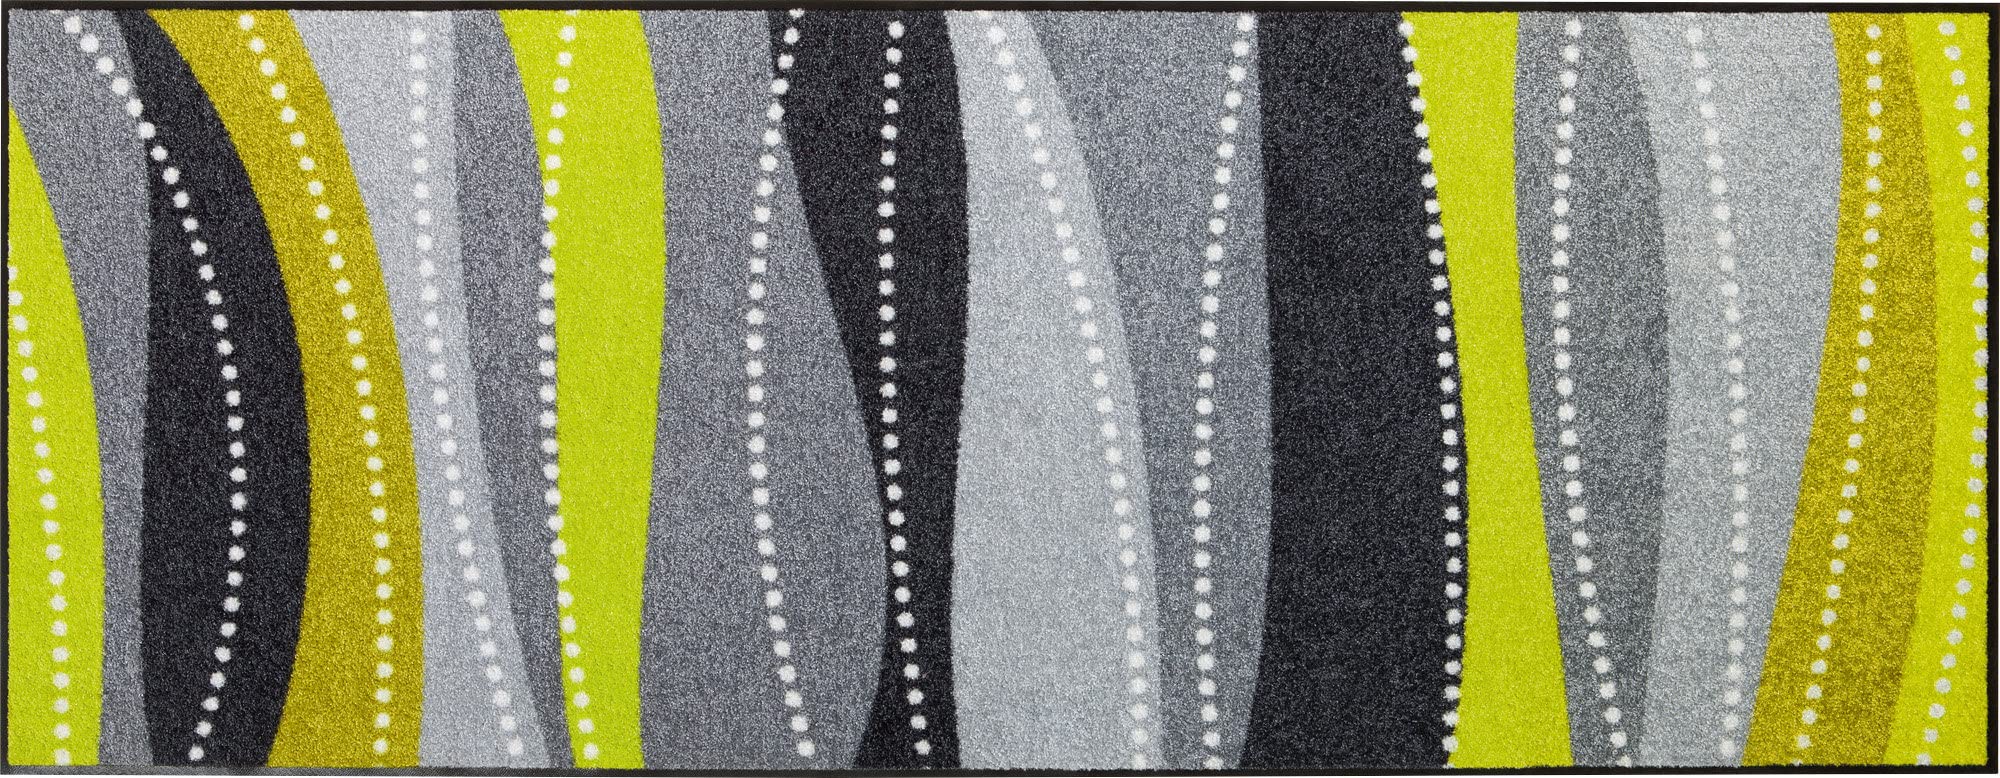 Erwin Müller Fußmatte Saarburg, Schmutzfangmatte, Sauberlaufmatte - rutschfest, langlebig, pflegeleicht, für Fußbodenheizung geeignet, ca. 7 mm Höhe - grün Größe 70x190 cm